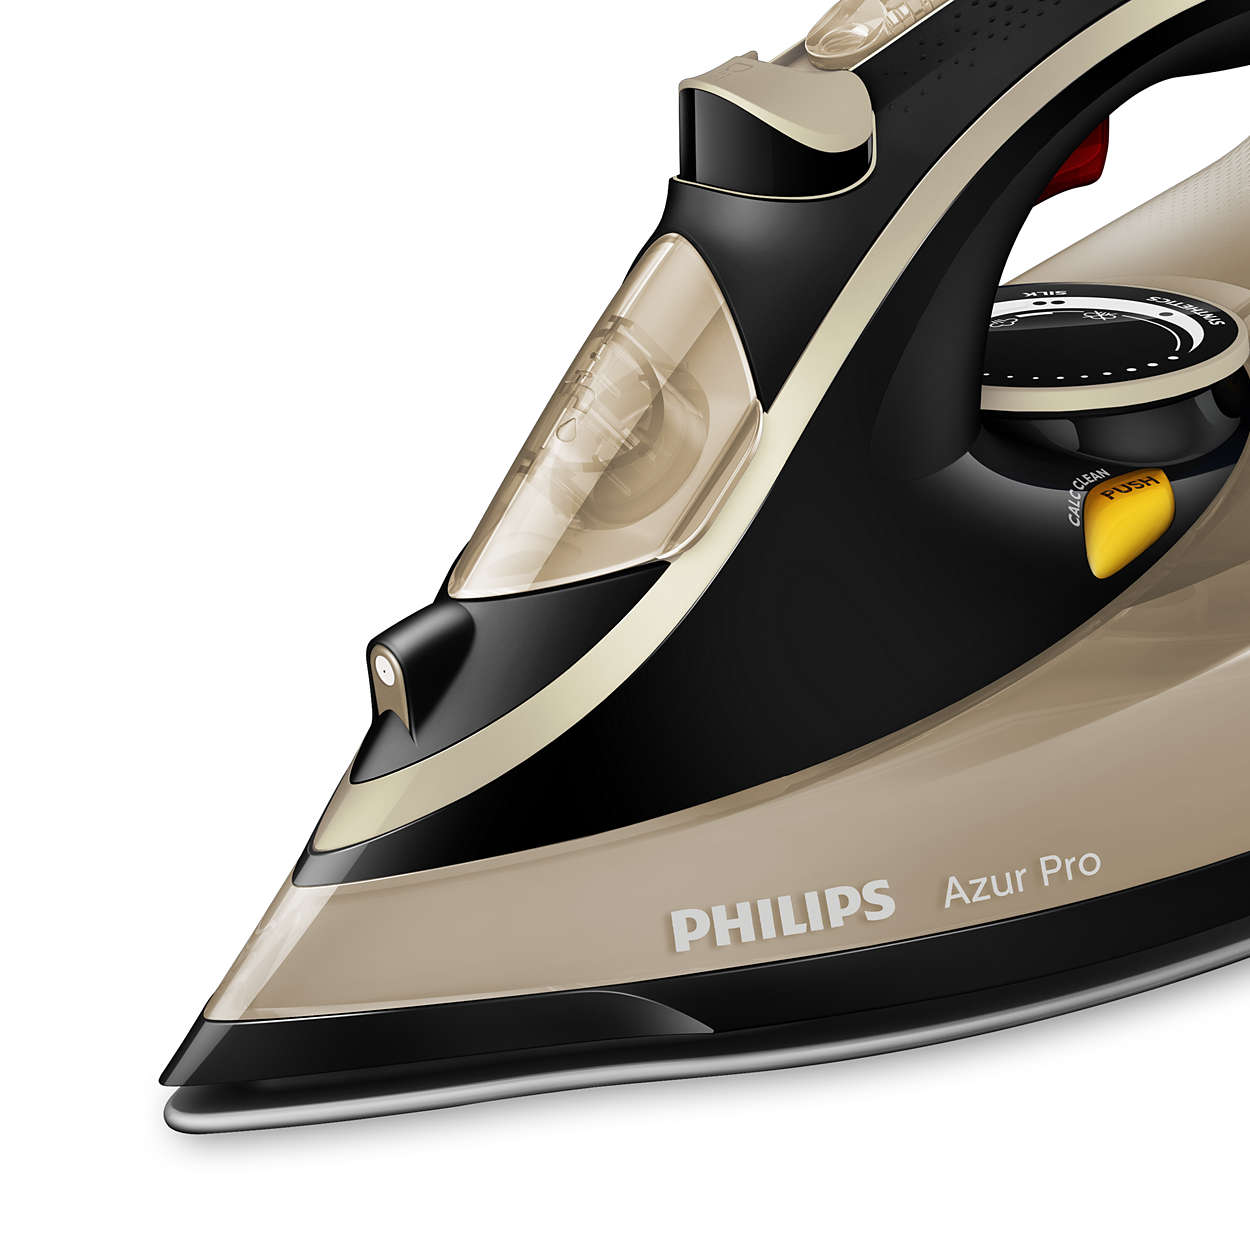 Утюг филипс 3000. Утюг Philips Azur Pro 3000w. Philips gc4887/30 Azur Pro. Утюг Филипс Азур. Утюг Филипс Azur Pro 4885.